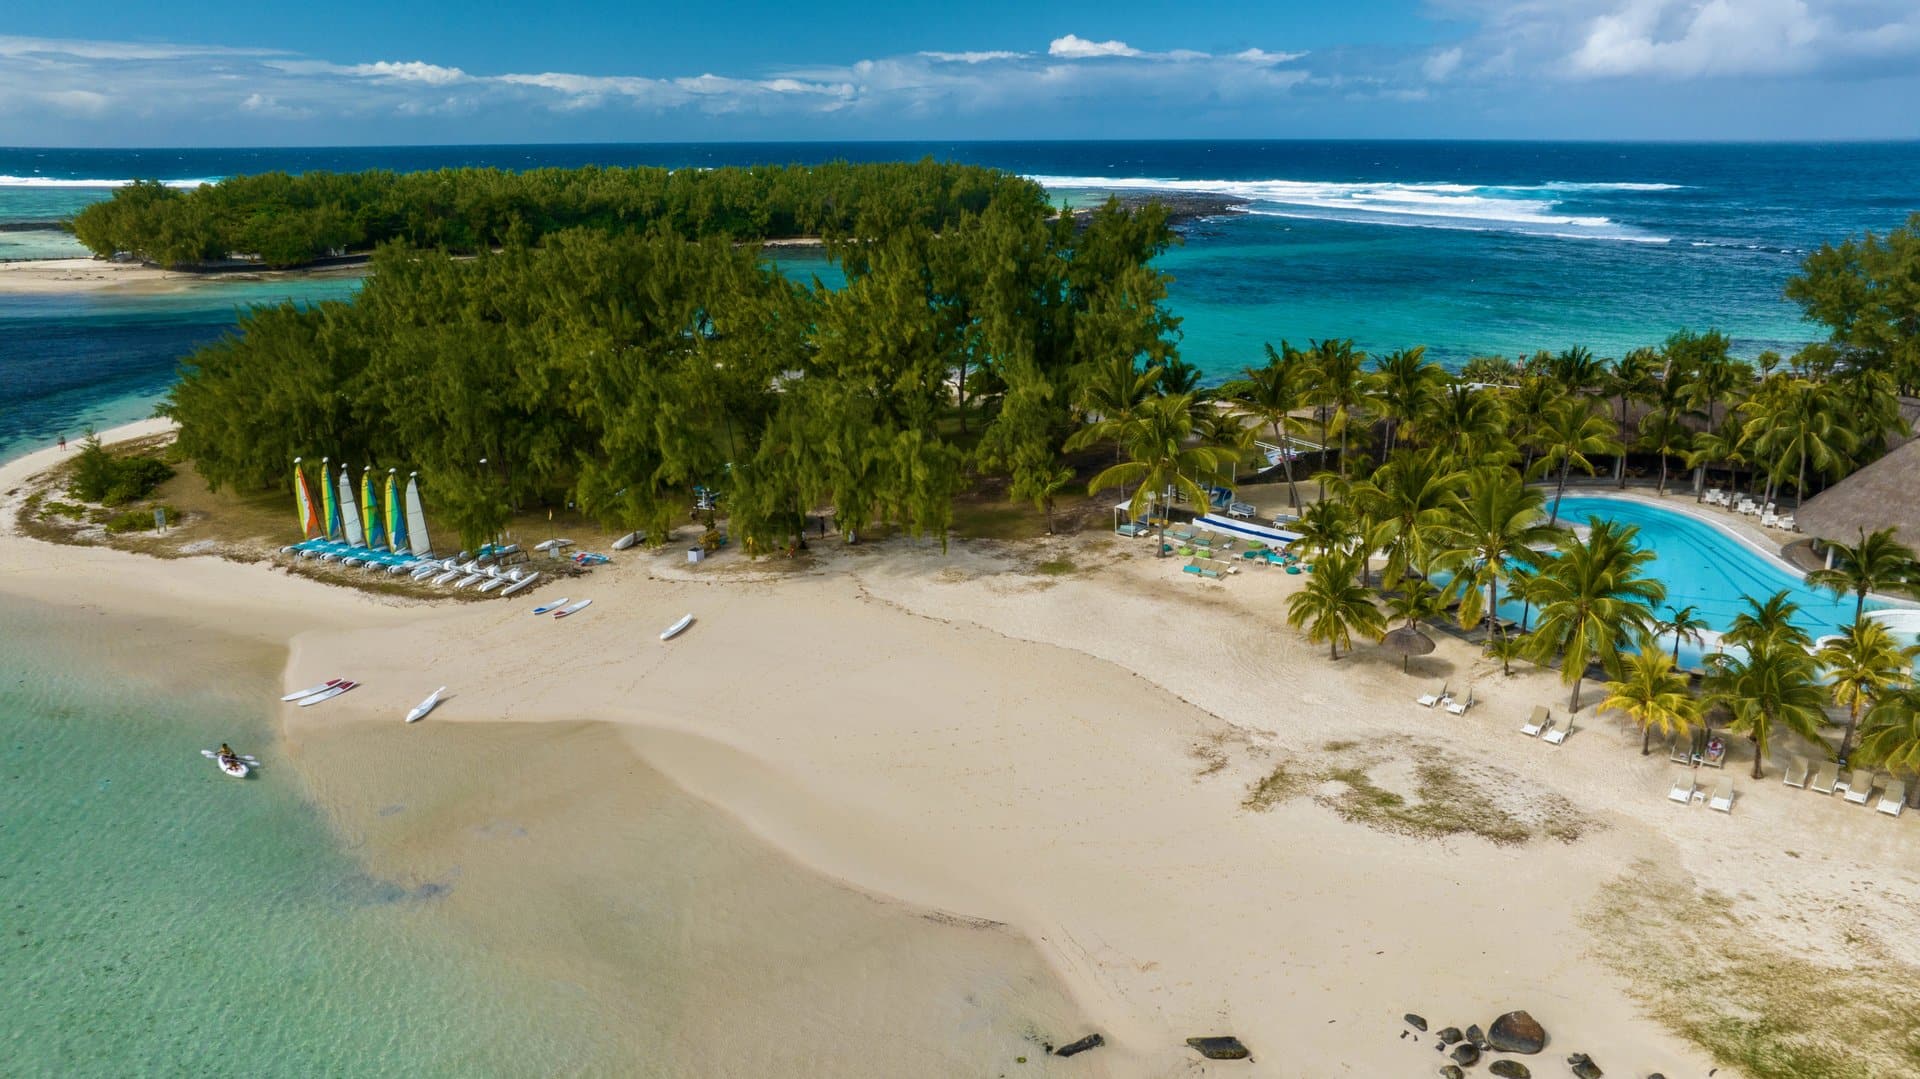 Готель Shandrani Beachcomber Resort & Spa має три різні пляжі, завдяки вигідному розташуванню на приватному півострові, оточеному морським заповідником Blue Bay, який багатий на різноманітне морське життя.